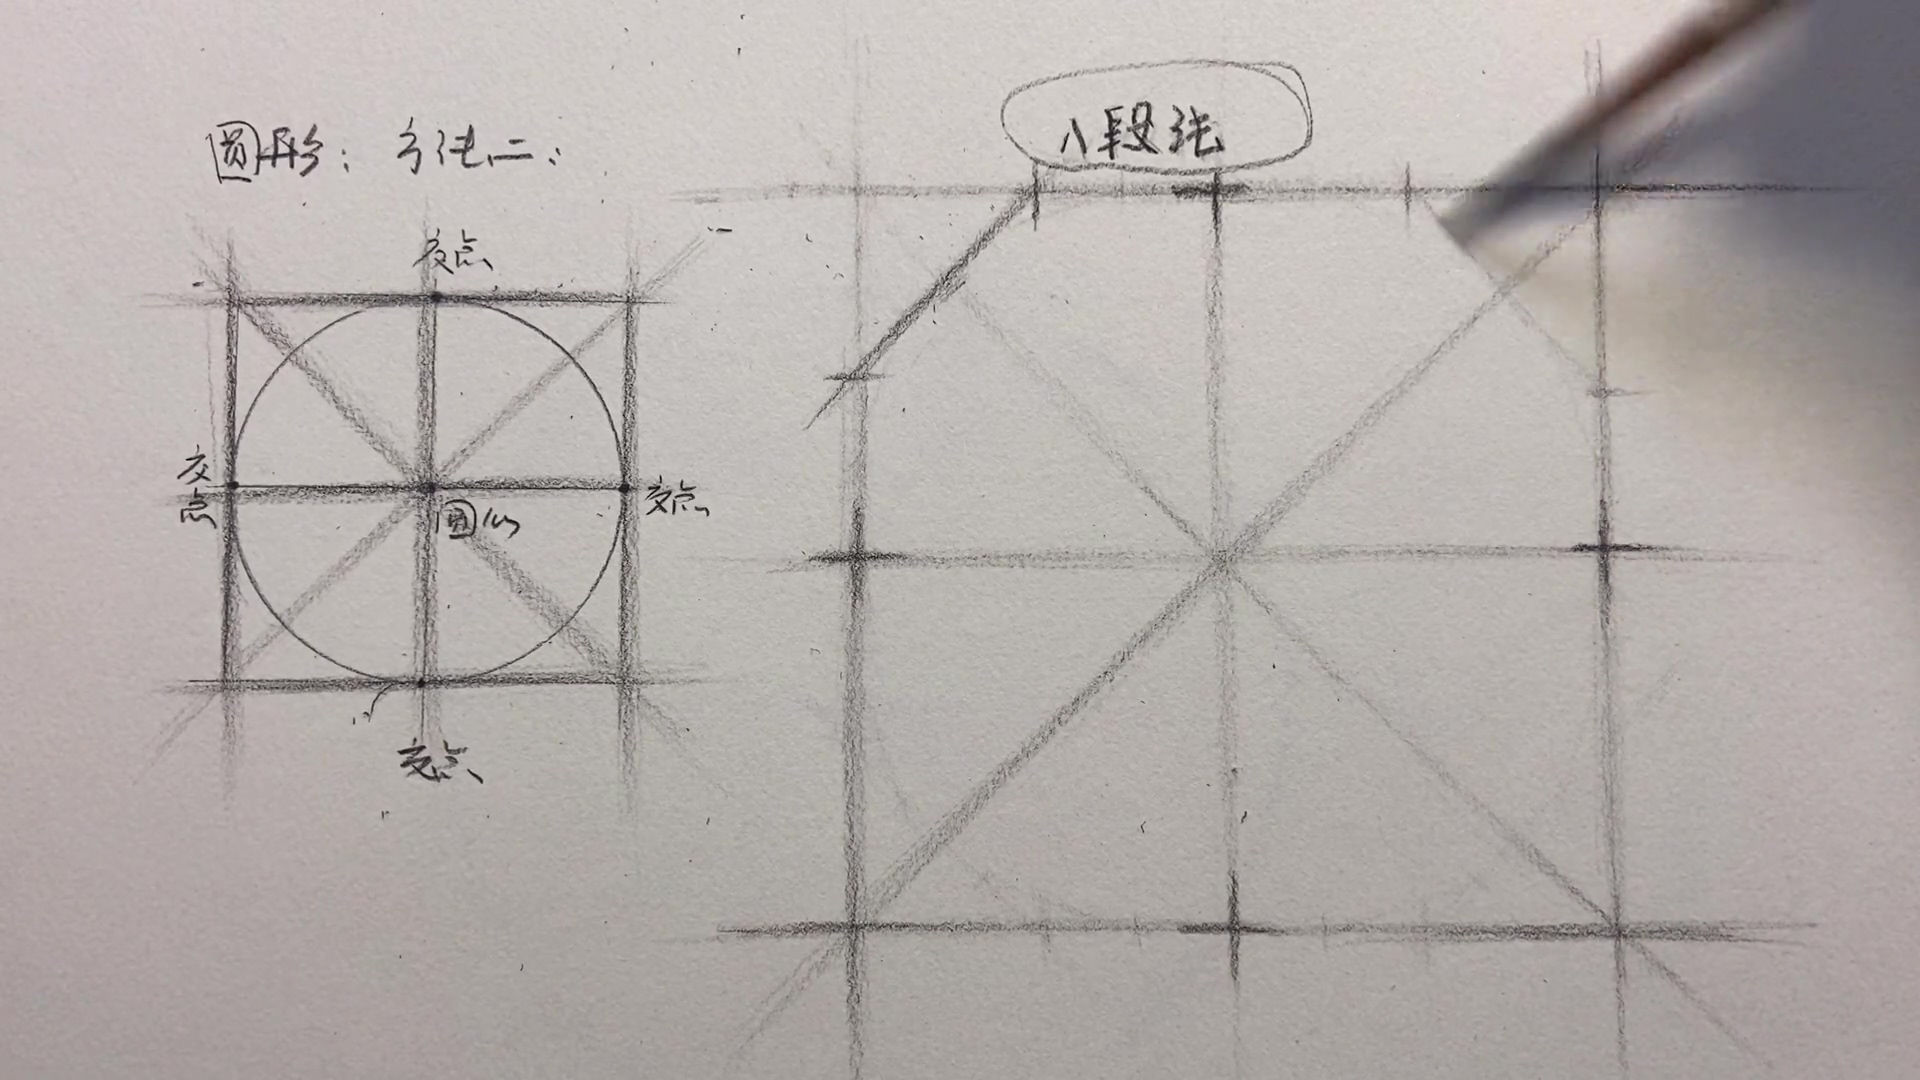 大乔素描全体系三合一几何静物石膏像插图